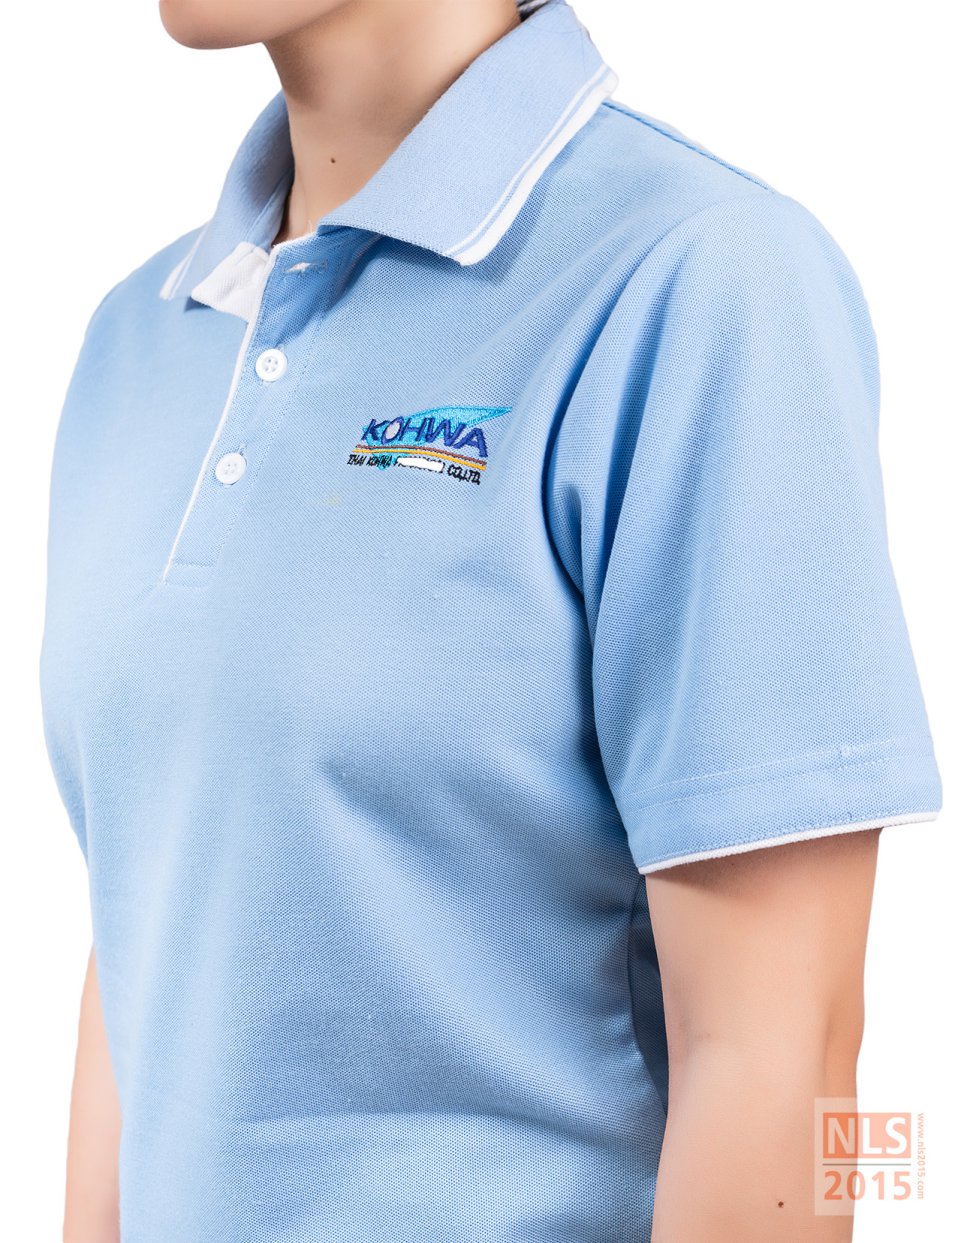 ตัวอย่างเสื้อโปโลพนักงานบริษัท KOHWA / นลินสิริ รับตัดเสื้อโปโล รับผลิตเสื้อโปโลพร้อมปักโลโก้รูปที่ 